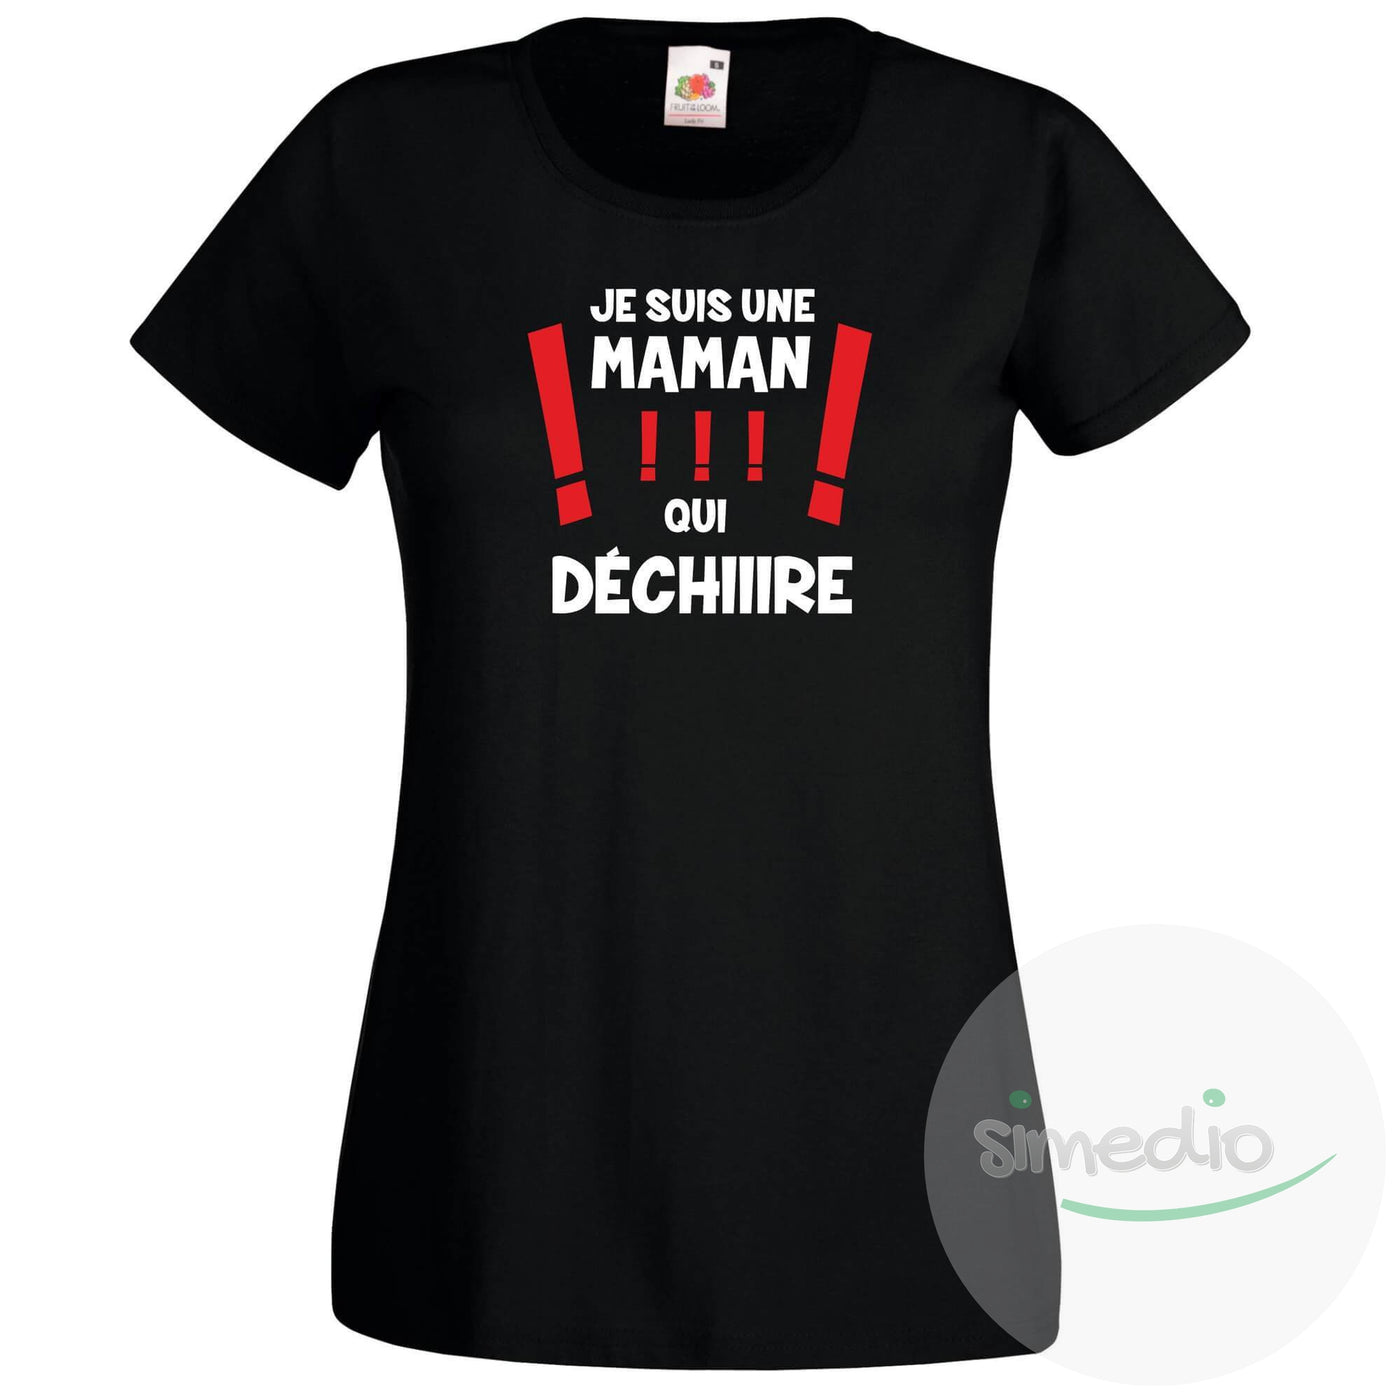 Tee shirt original : je suis une MAMAN qui DÉCHIRE !, Noir, S, - SiMEDIO